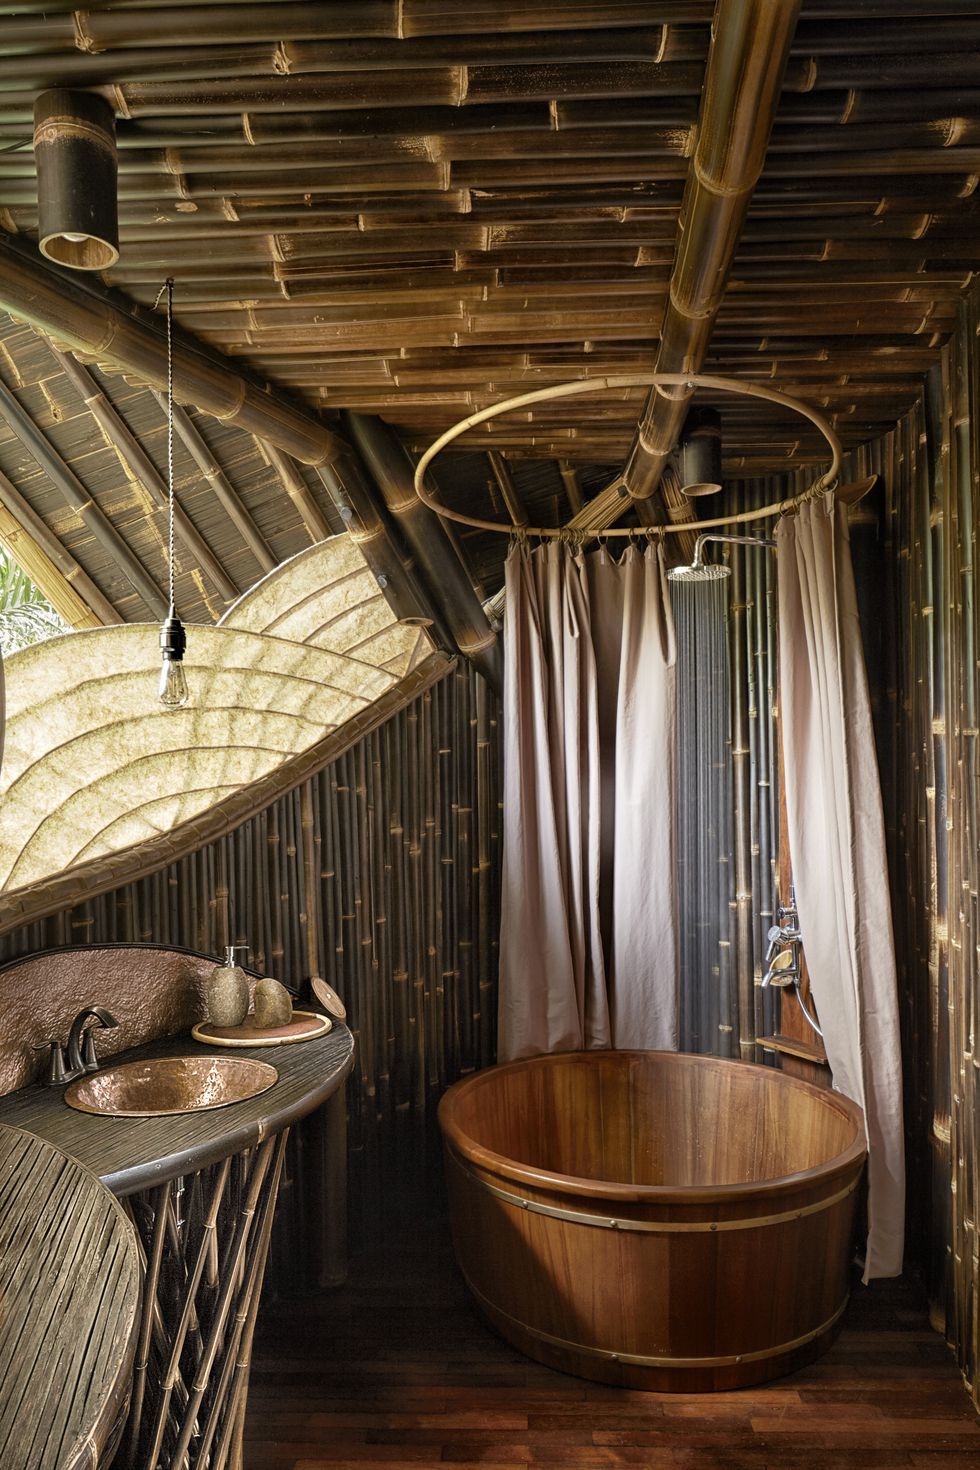 Các bạn đang nhìn ngắm phòng tắm trong “Biệt thự tre”, xây dựng theo phong cách Nhật Bản tại Bali - nơi được mệnh danh hòn đảo ngọc của đất nước Indonesia xinh đẹp. Sự mềm mại, dẻo dai của tre đã tạo nên nội thất đẹp như những tác phẩm nghệ thuật trong không gian nhỏ bé.